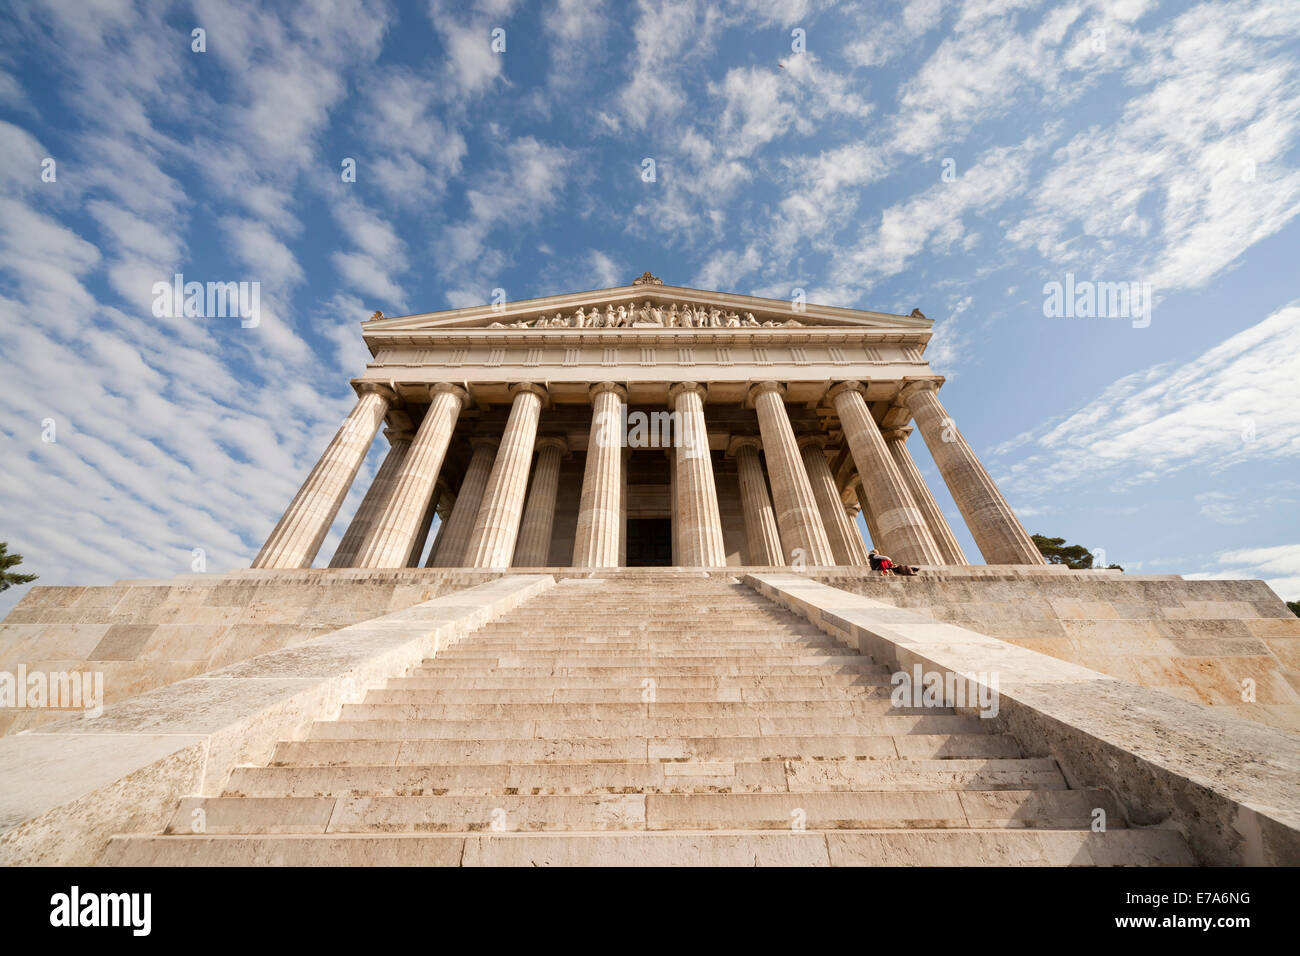 Estilo griego, edificio neoclásico de la Walhalla memorial por encima del río Danubio, al este de Ratisbona, Baviera, Alemania, Europa Foto de stock